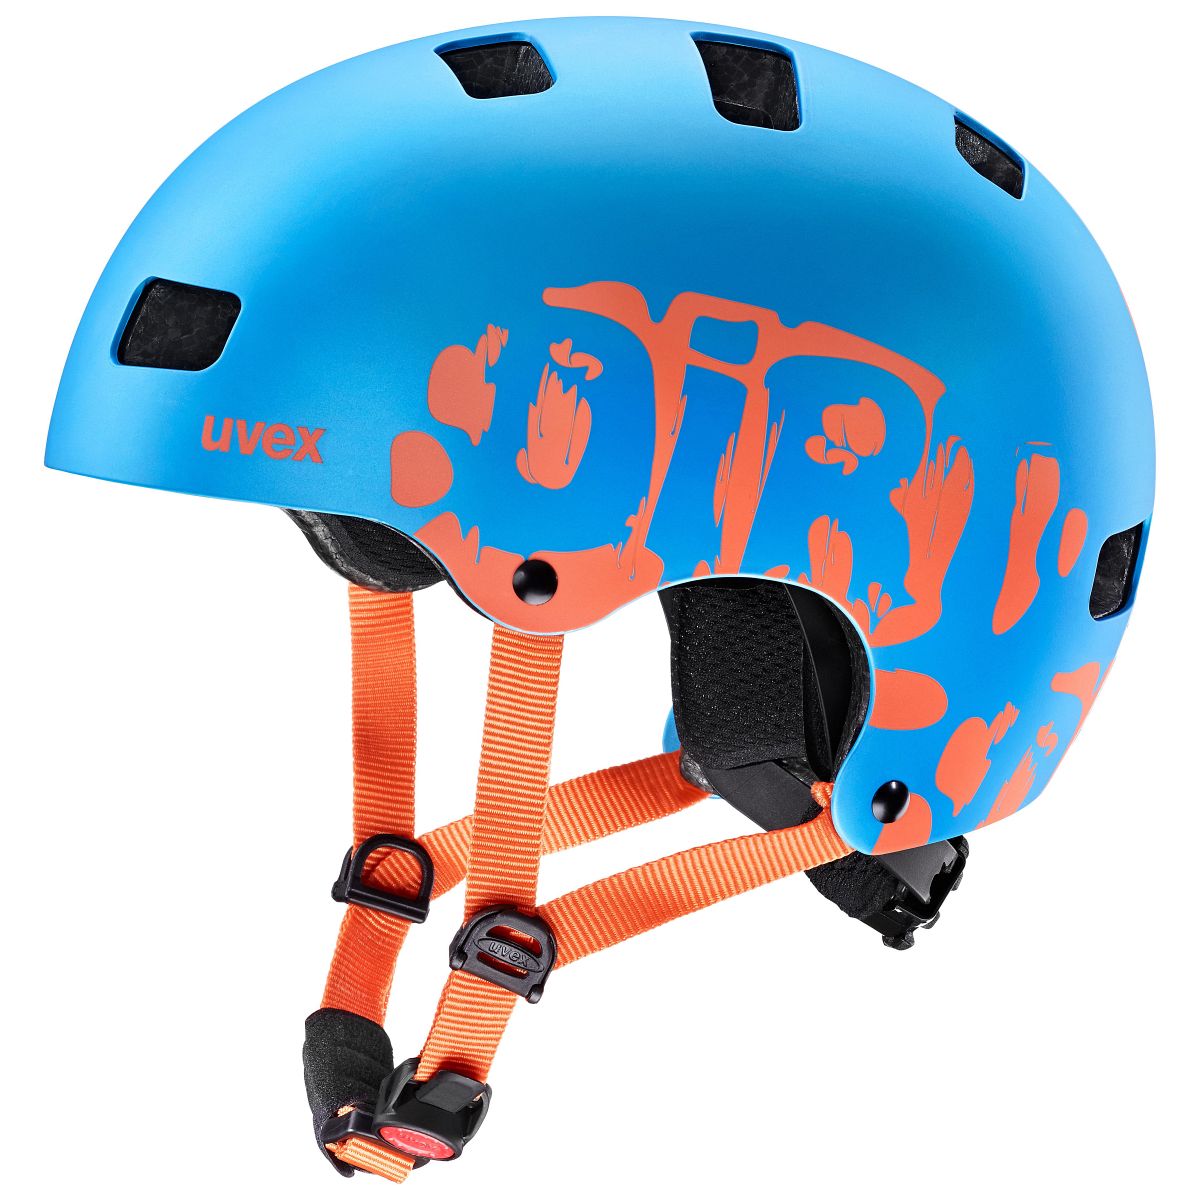 Uvex Kid 3 CC Kinder Dirtbike Skate Fahrrad Helm blau 2020